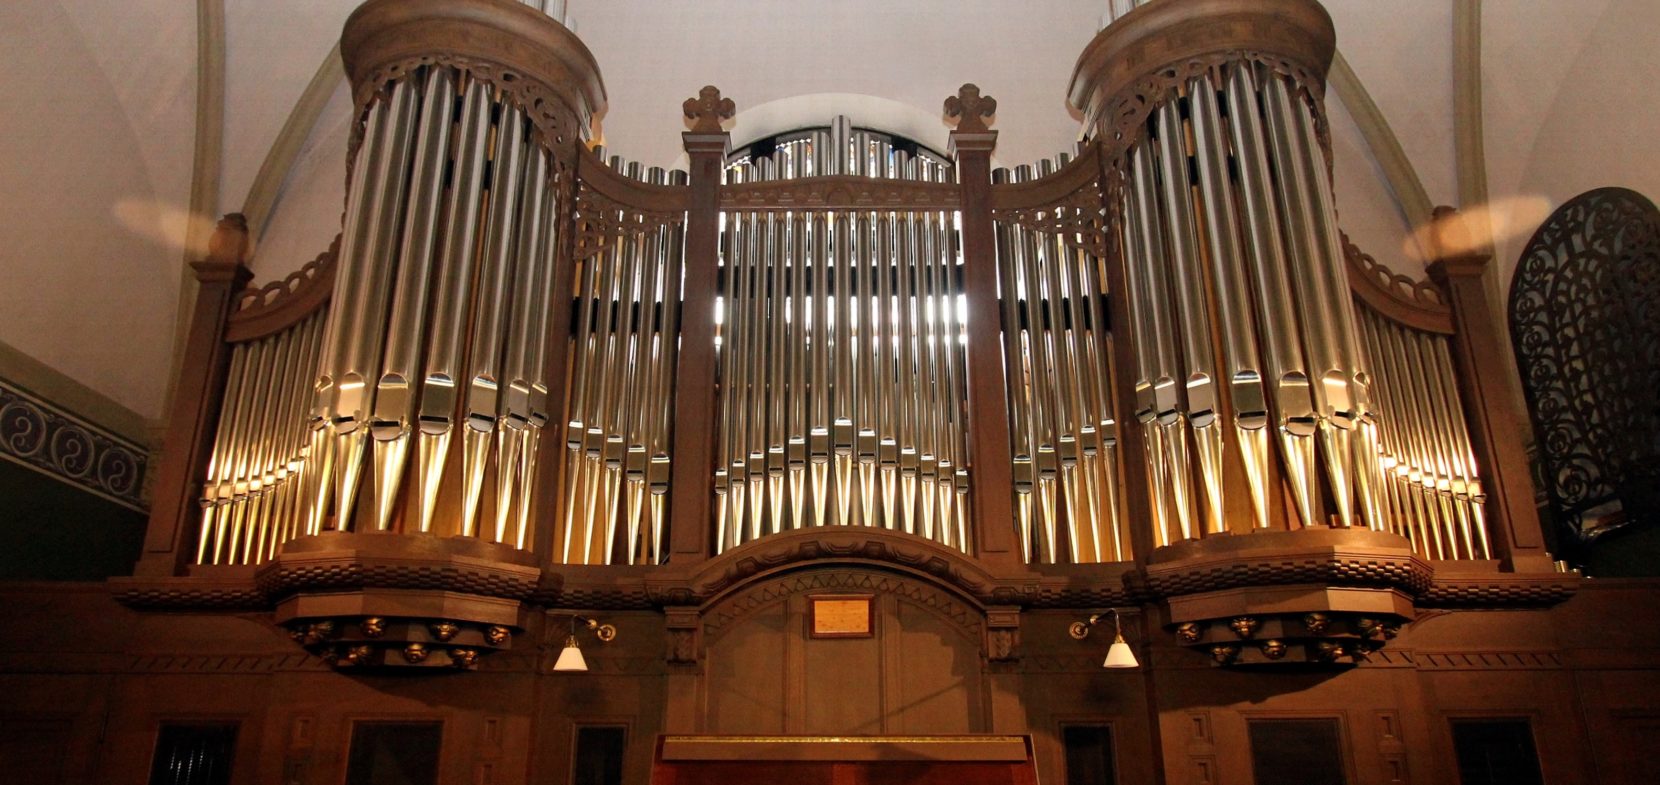 Besondere Orgeln